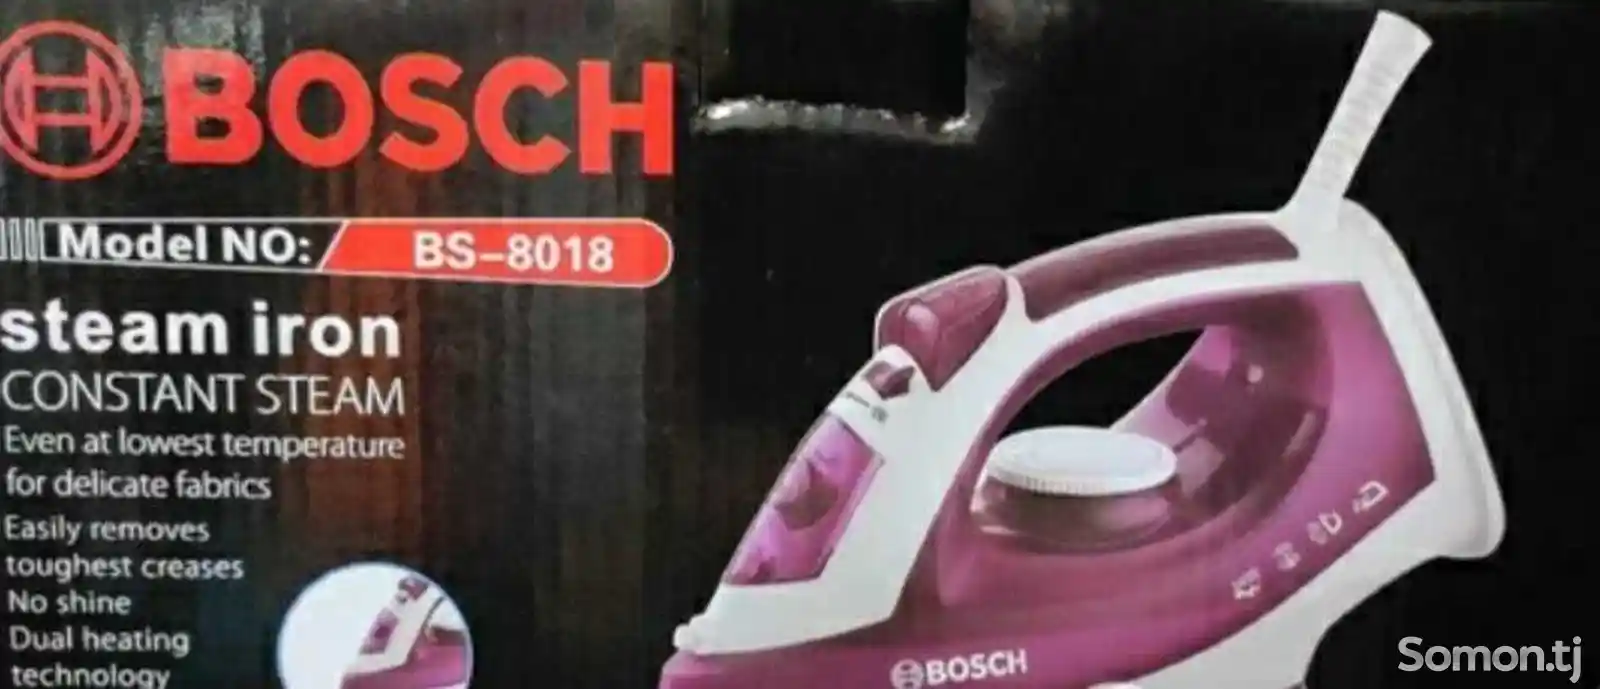 Утюг Bosch 8018